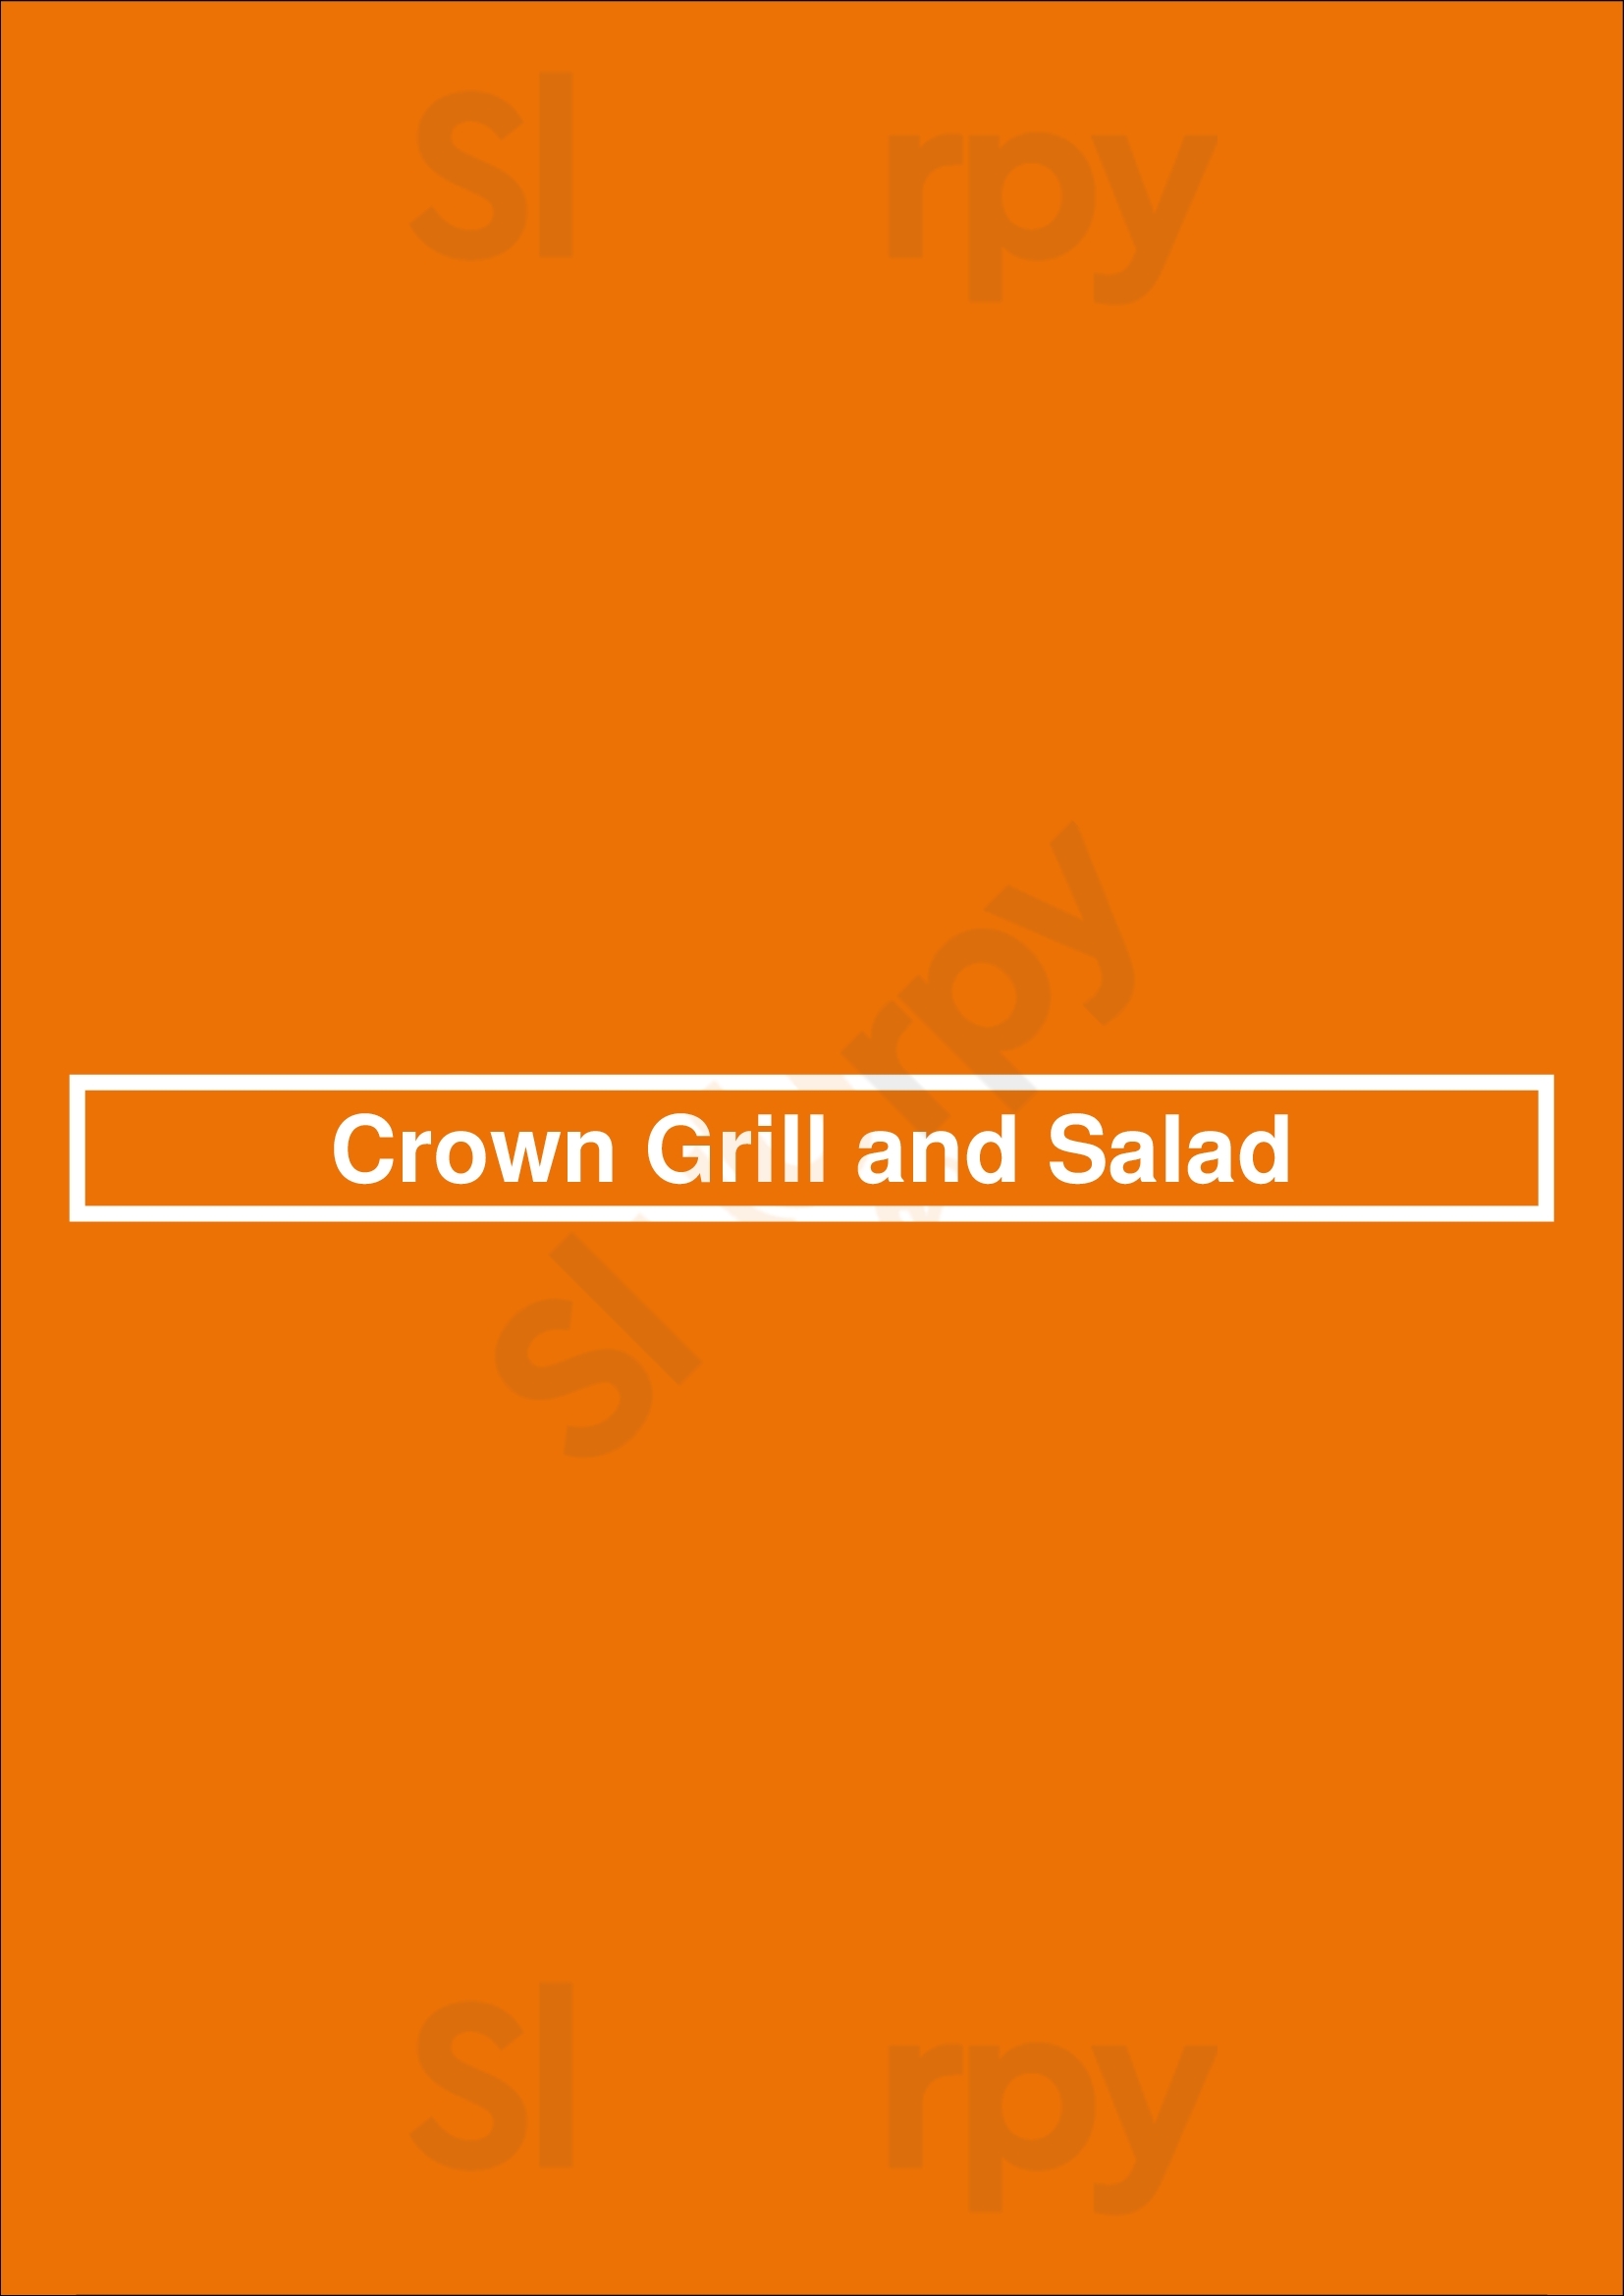 Crown Grill And Salad Brooklyn Menu - 1